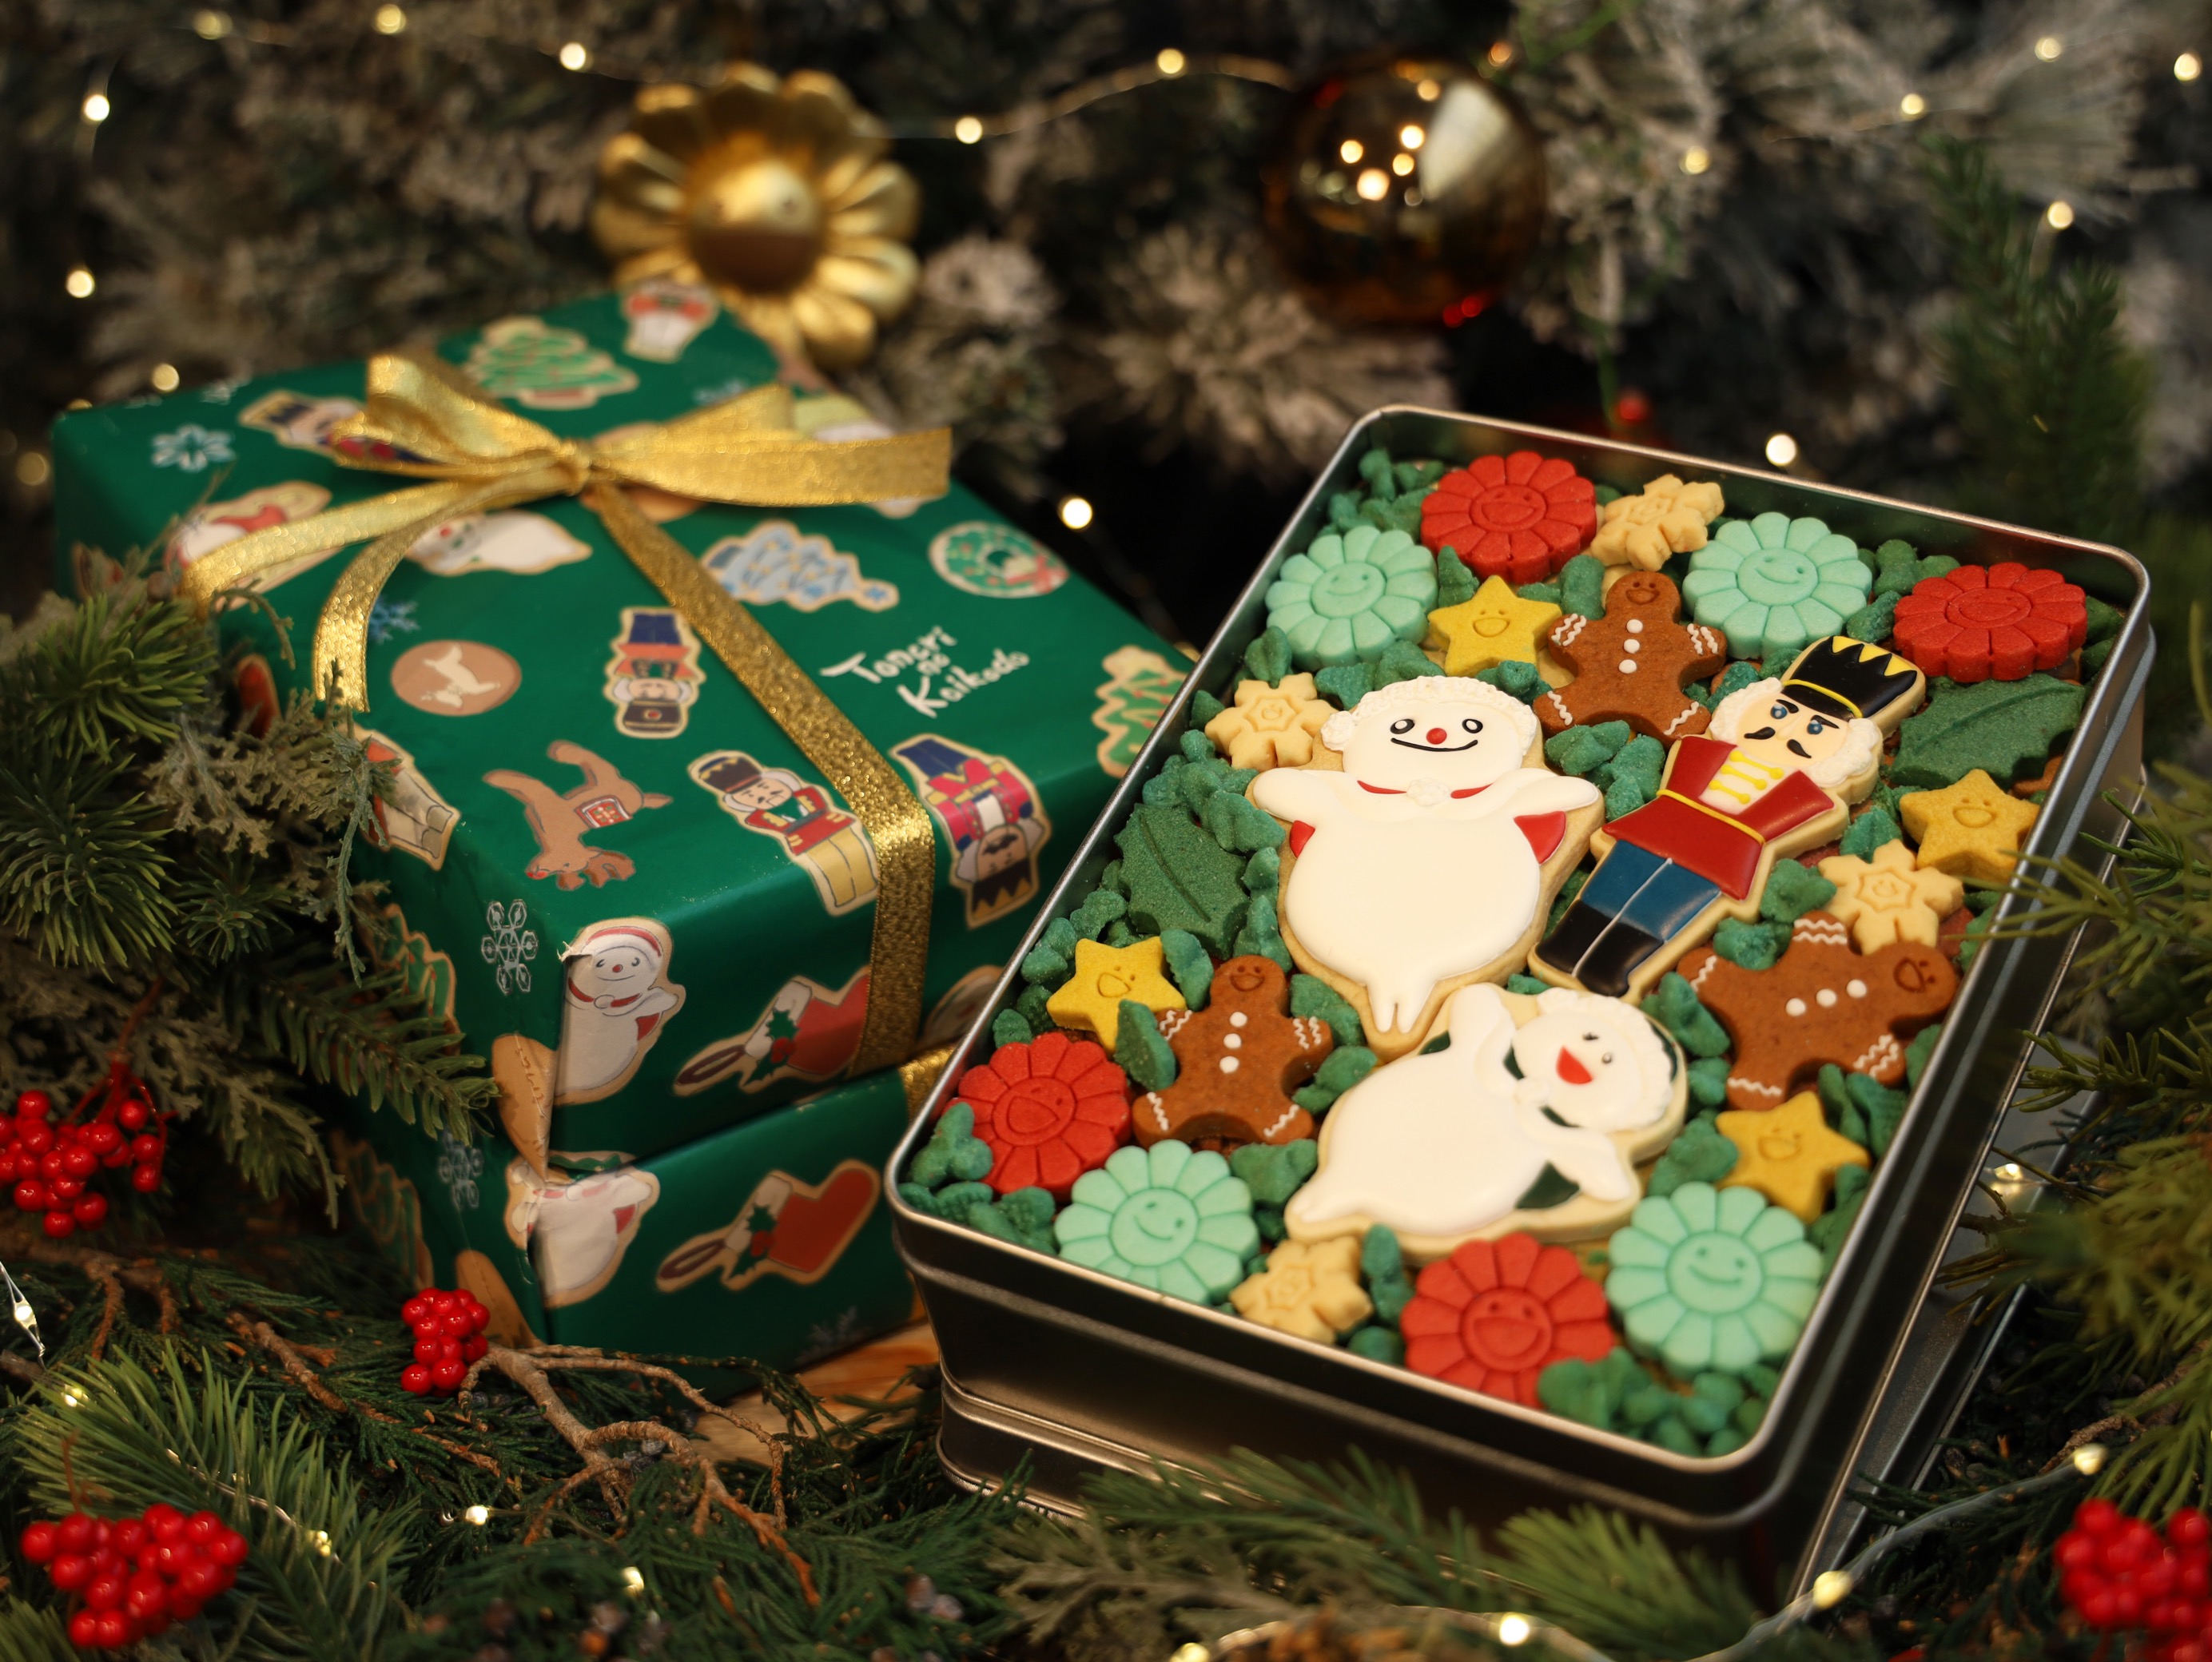 12月6日(月)12:00より、「お花のクリスマスクッキー缶」を受注販売いたします。【12/17より順次発送】 | Zingaro official  Web